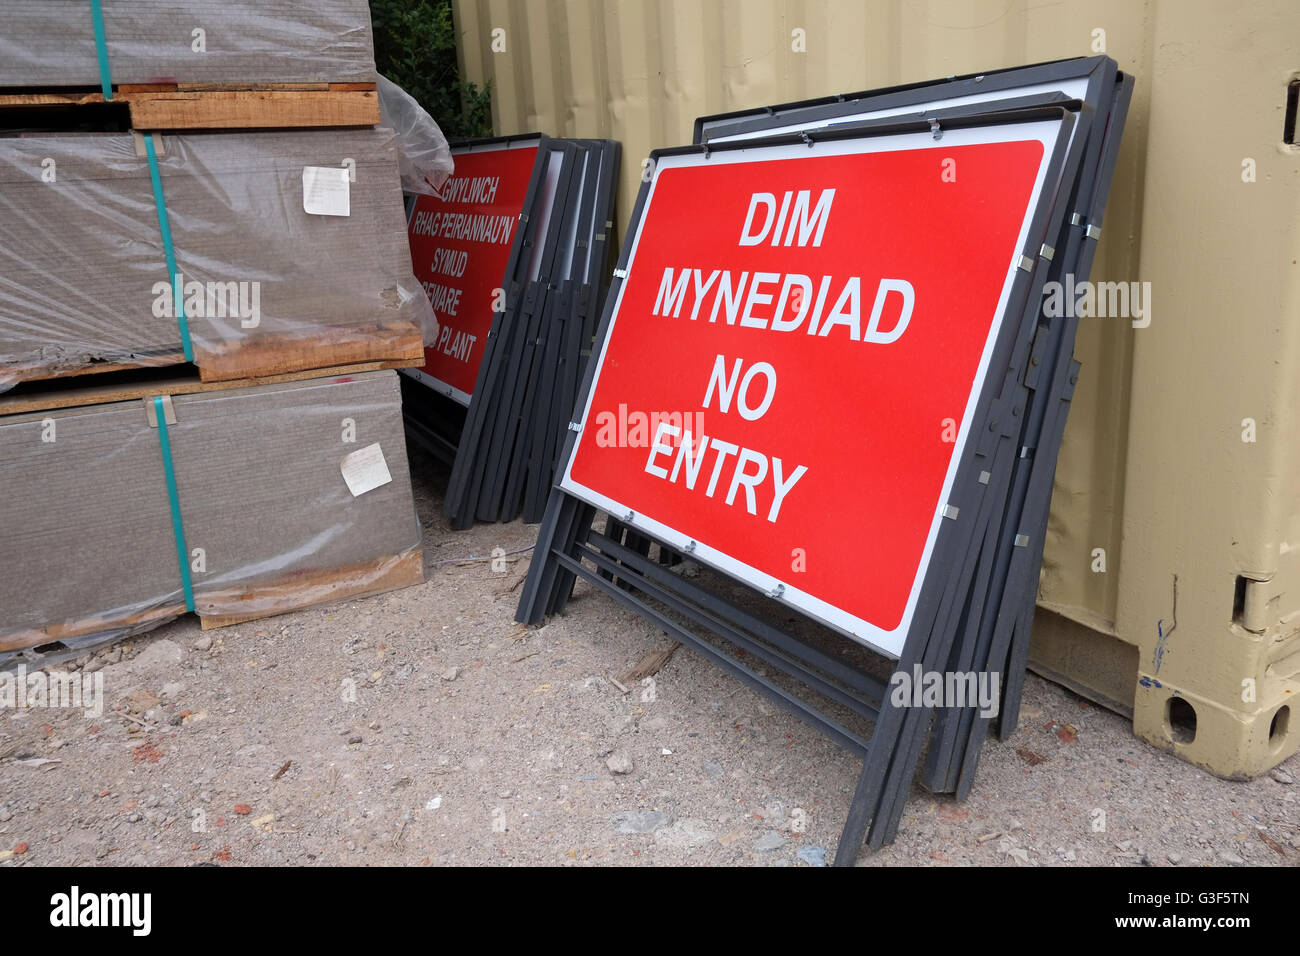 Zweisprachige Welsh / englische kein Eintrag Zeichen stützte sich auf eine Fremdfirma Kabine, Juni 2016 Stockfoto